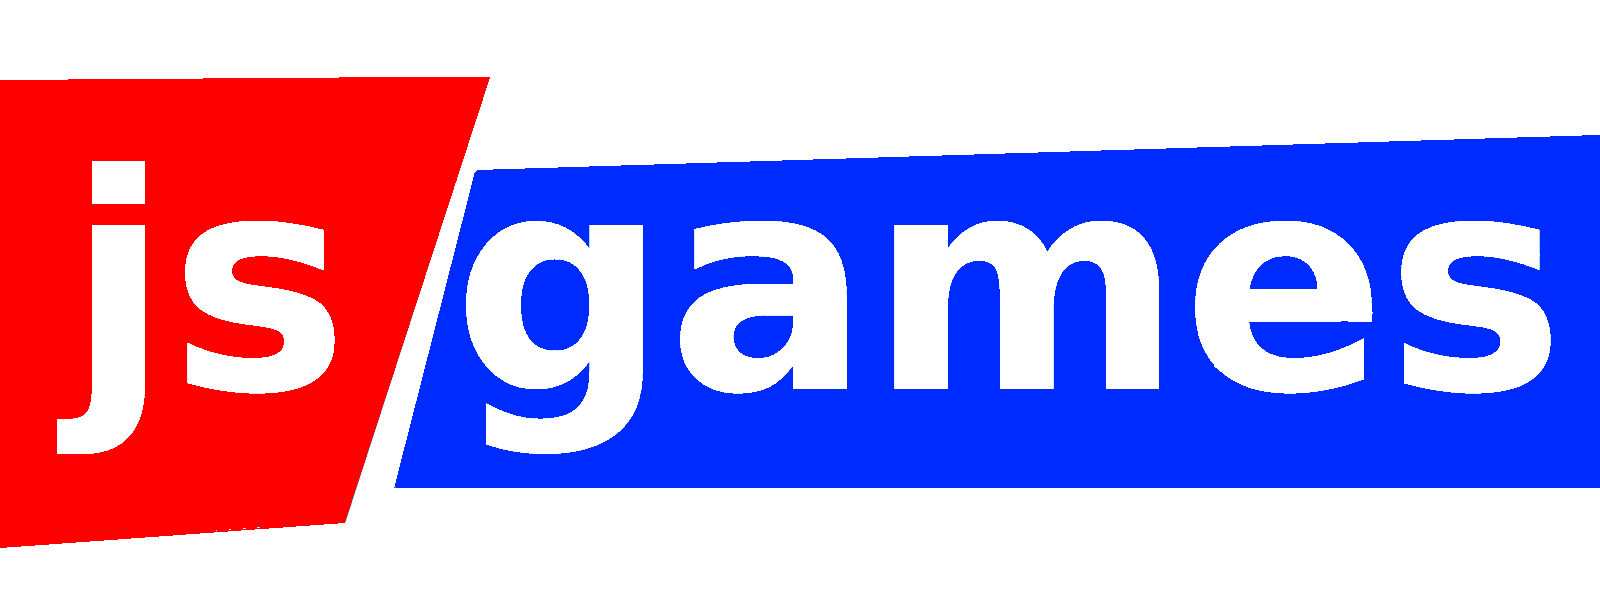 jsgames logo